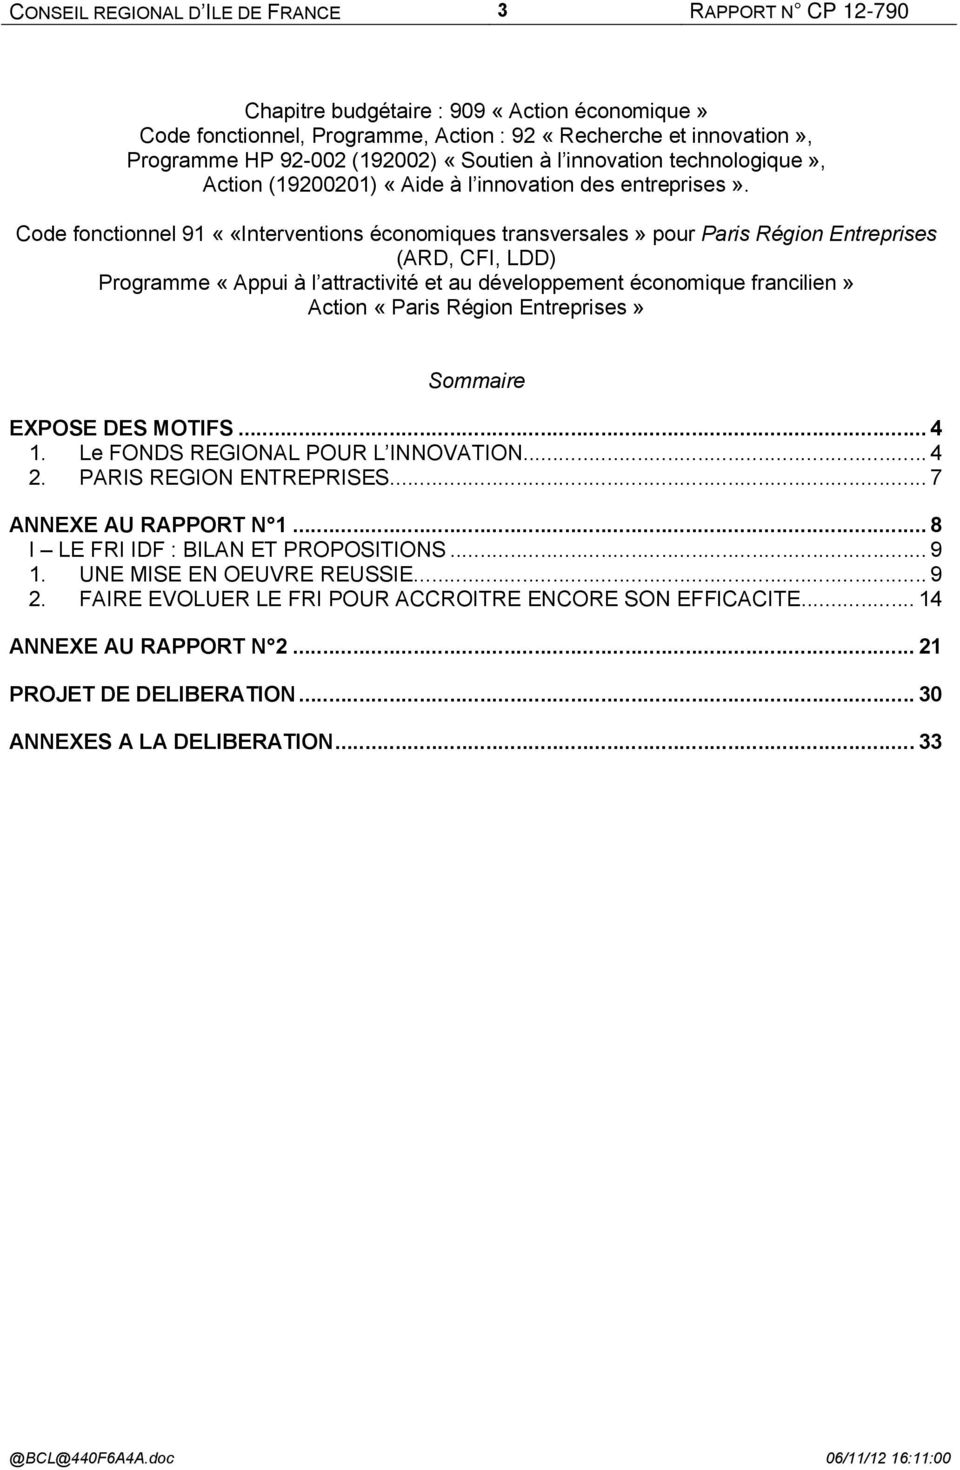 Code fonctionnel 91 ««Interventions économiques transversales» pour Paris Région Entreprises (ARD, CFI, LDD) Programme «Appui à l attractivité et au développement économique francilien» Action «Paris